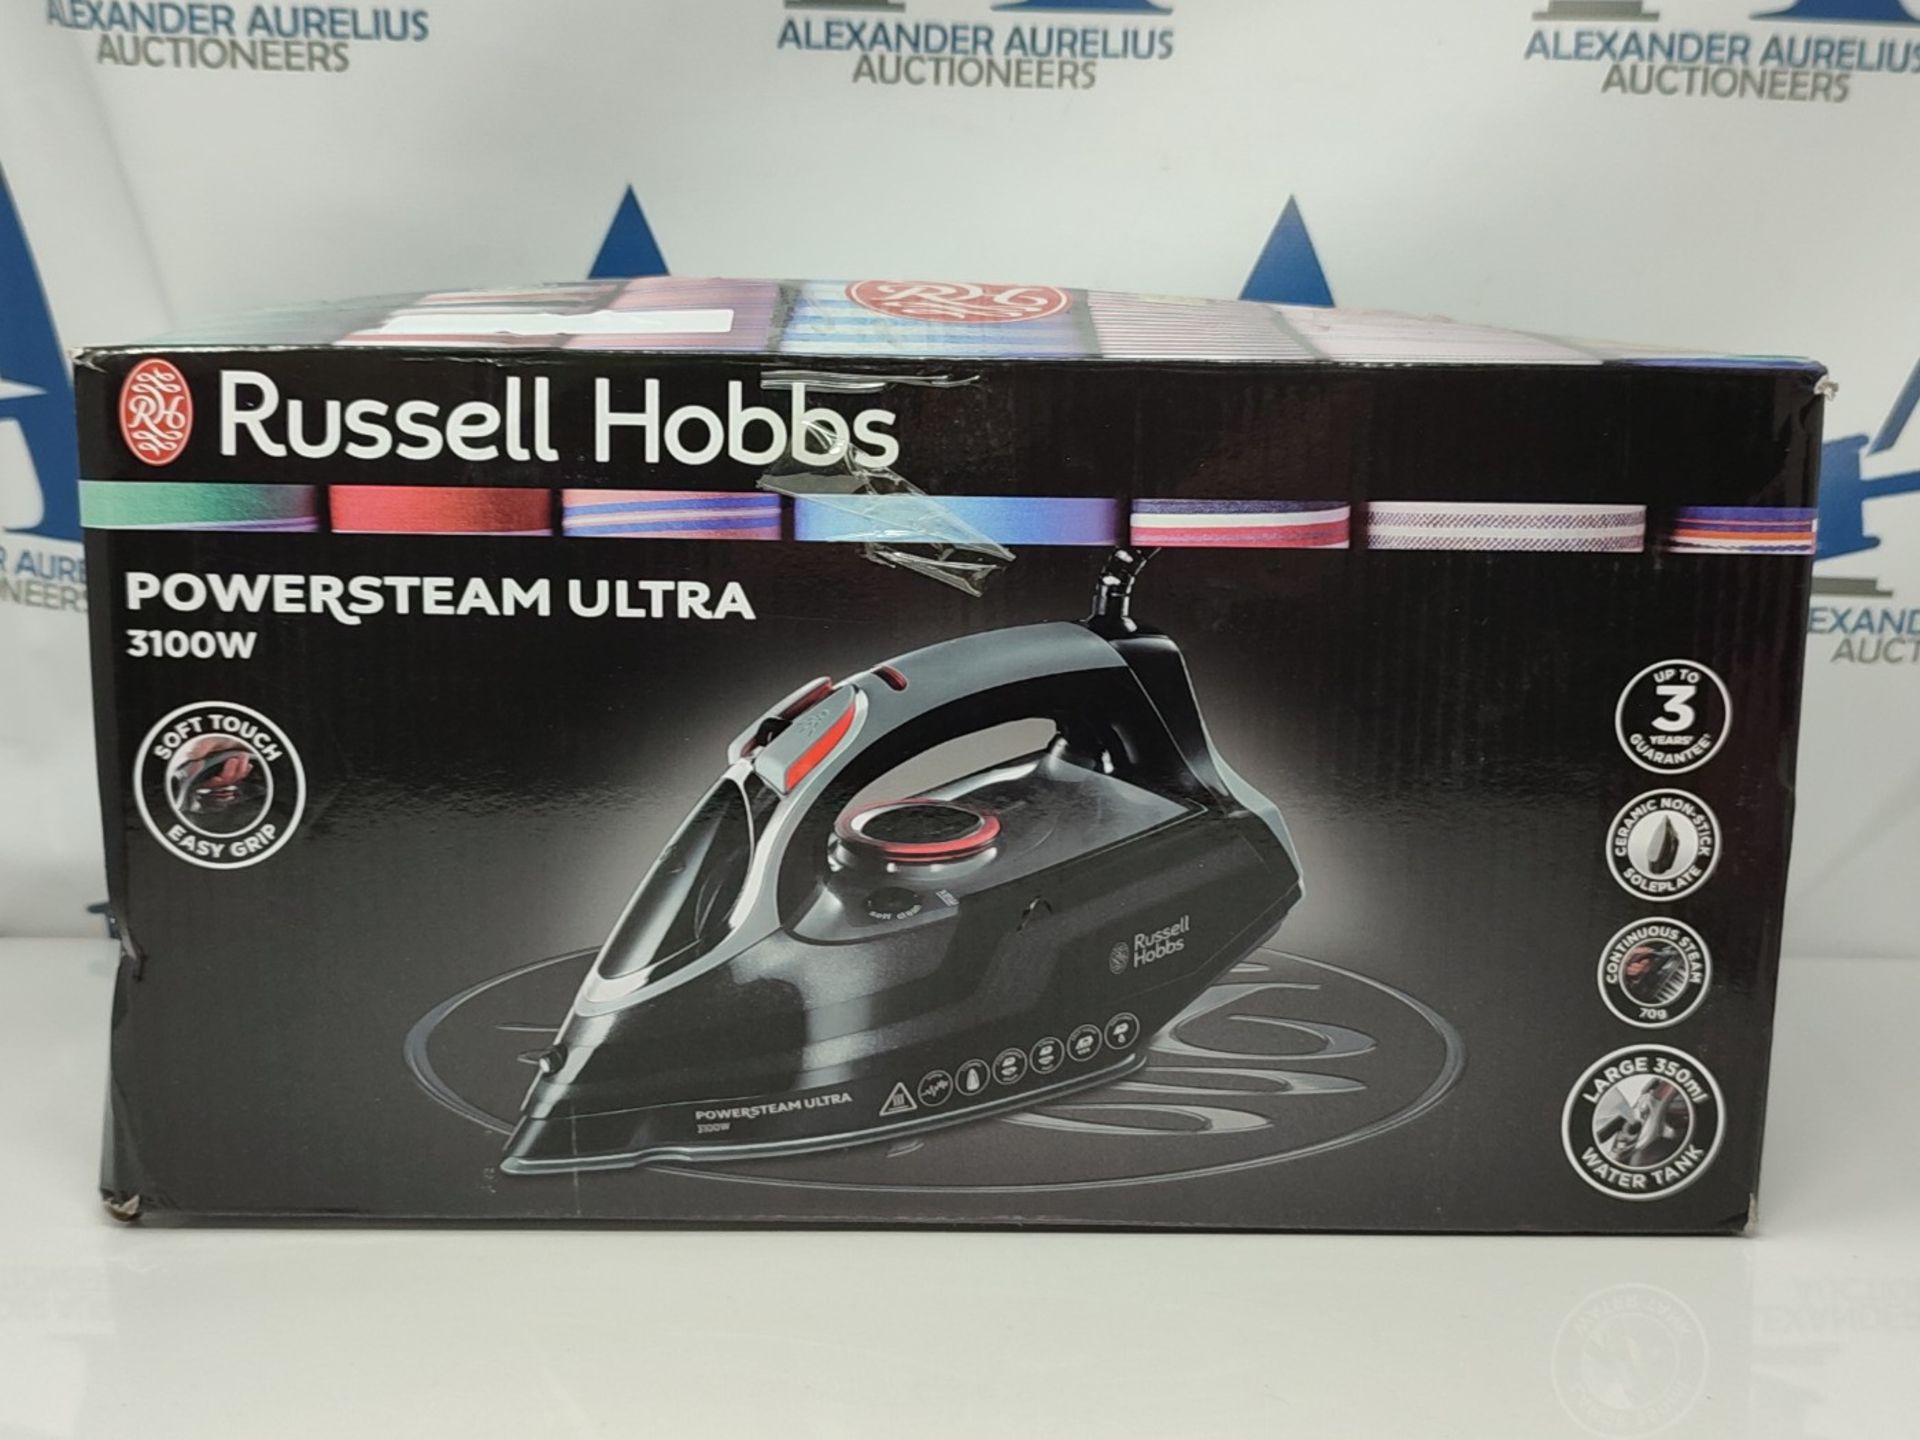 Russell Hobbs Powersteam Ultra 3100 W Vertical Steam Iron 20630 - Black and Grey - Bild 2 aus 3